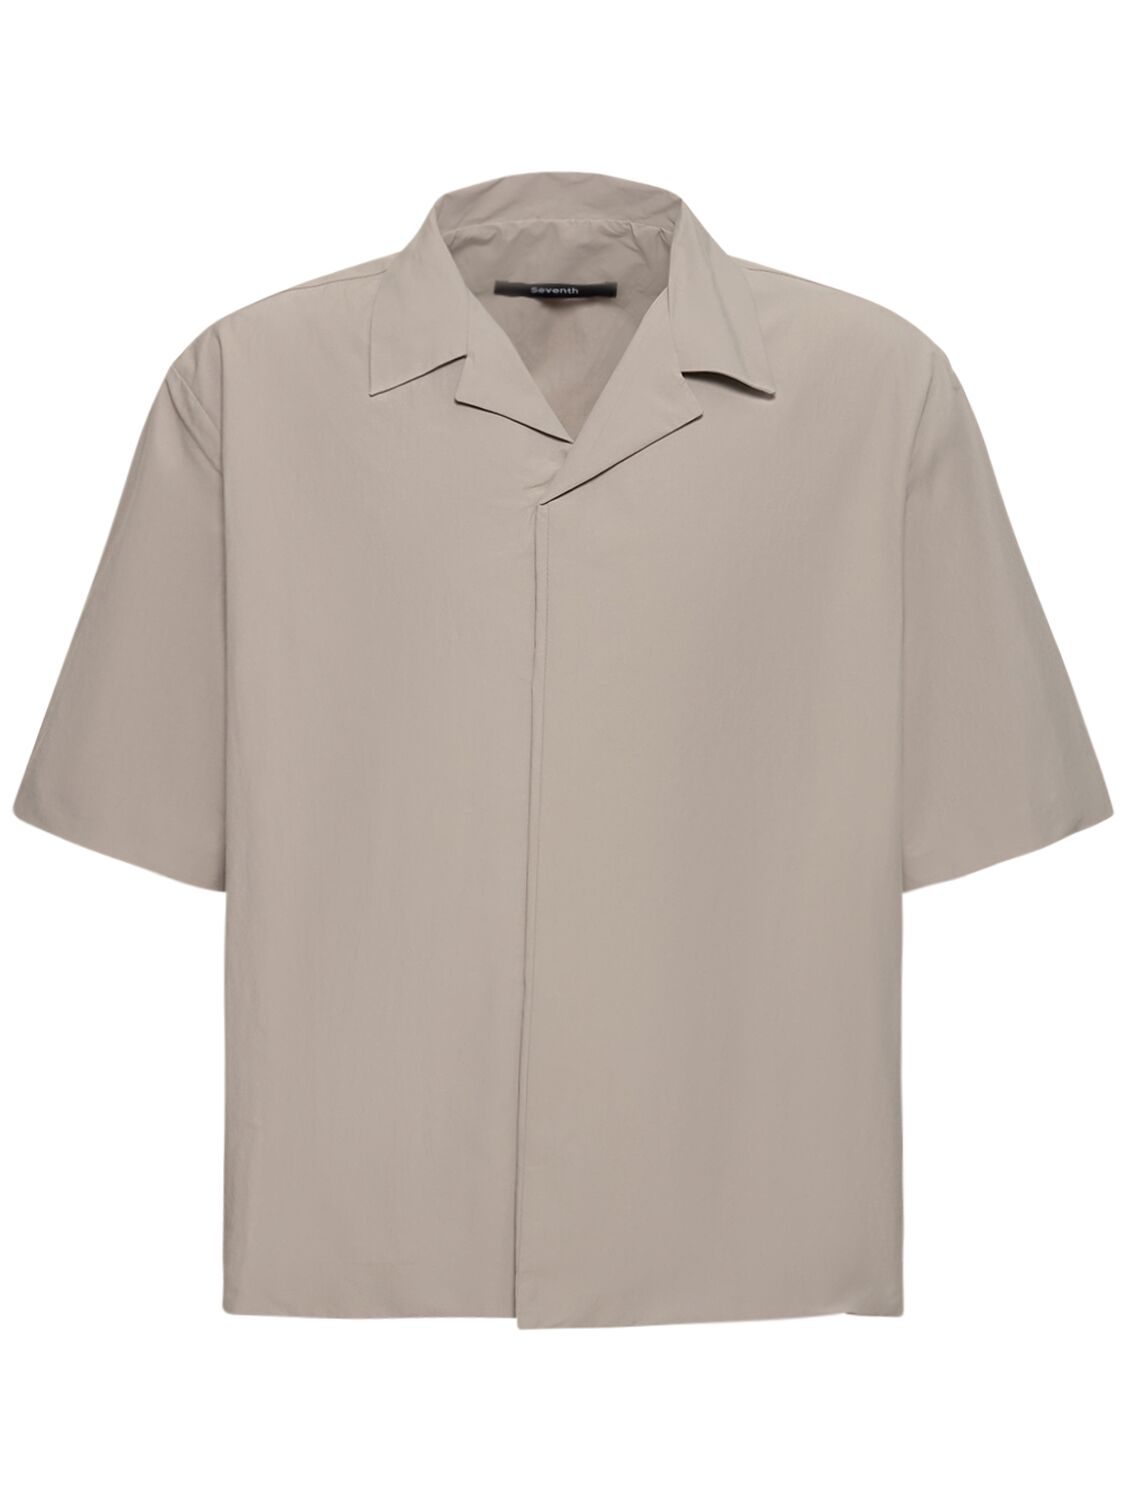 M5 Cuban Cotton Blend Shirt